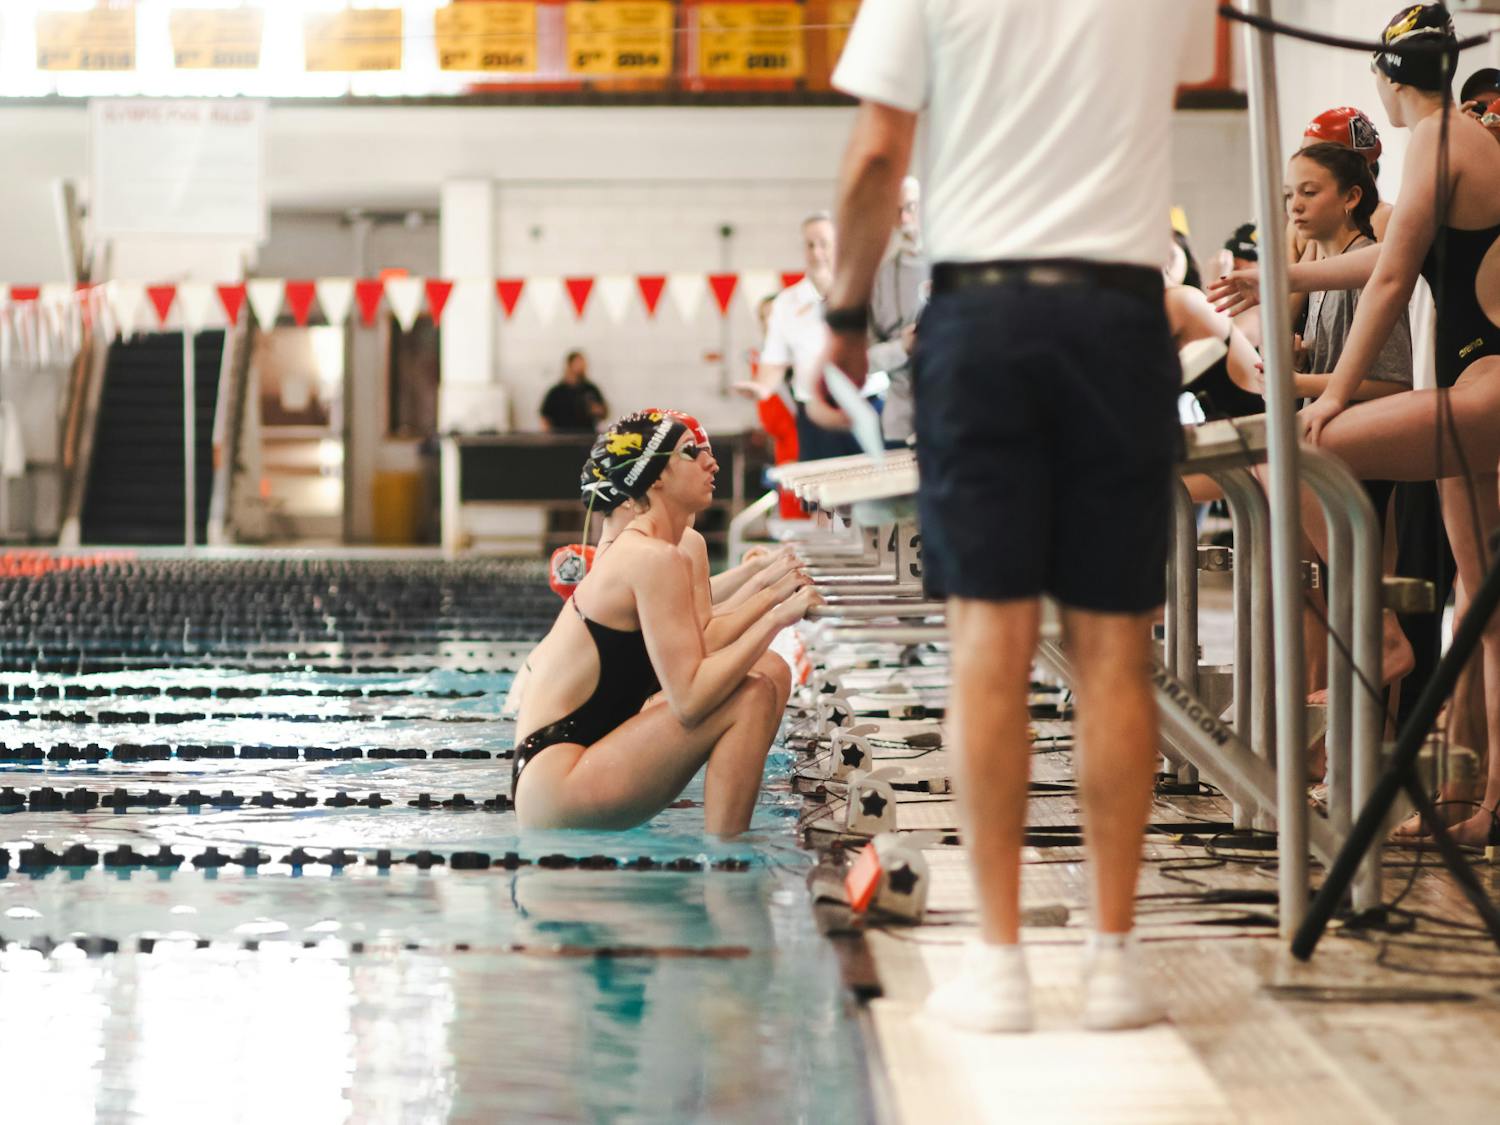 PHOTO STORY: Swimmers splash into Senior Day